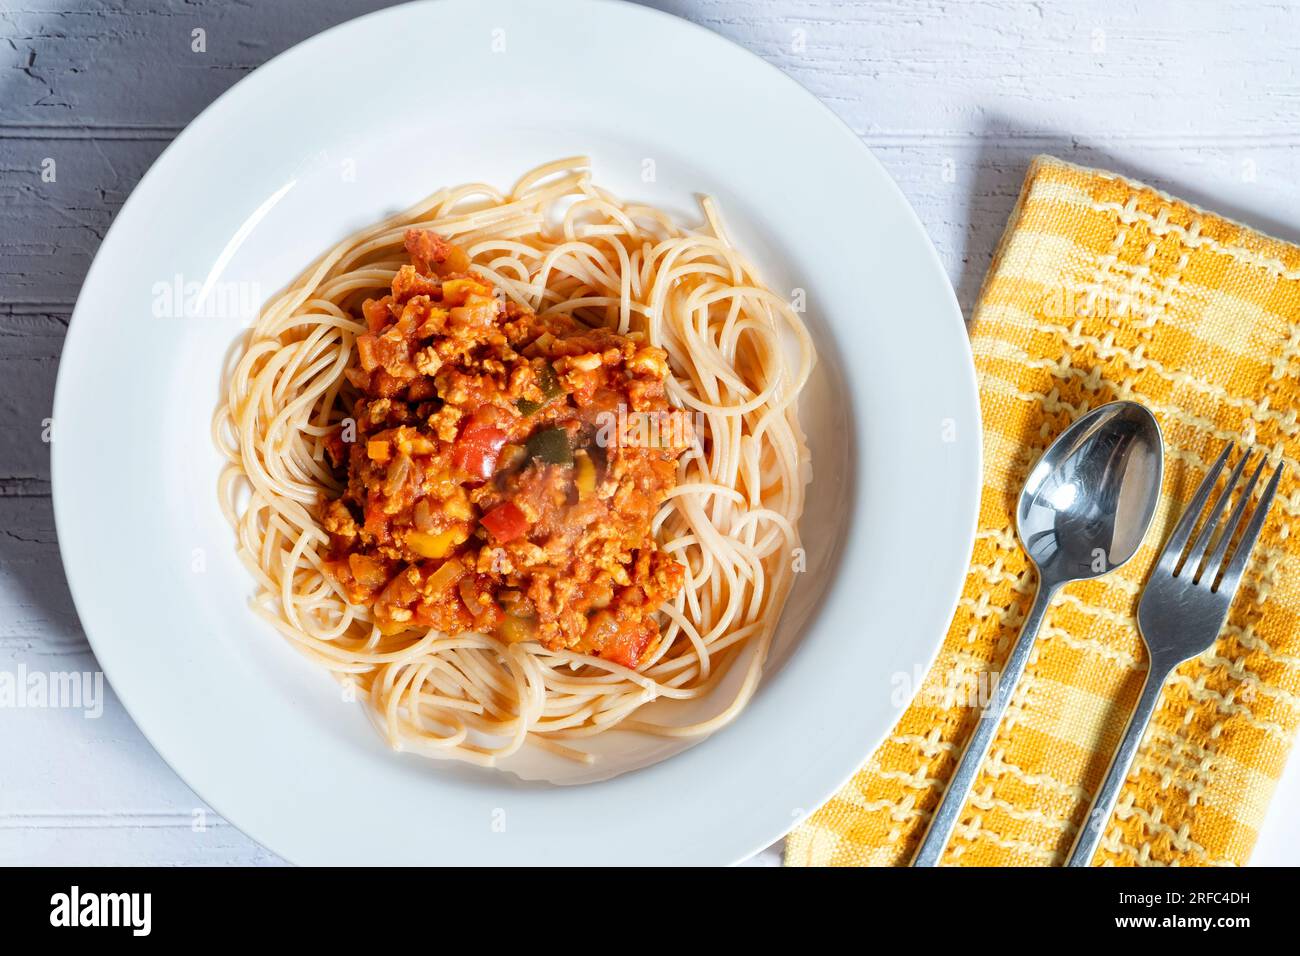 Una ciotola di ragu bolognaise servita su un letto di spaghetti. Una porzione viene posta su un tavolo in una ciotola bianca Foto Stock